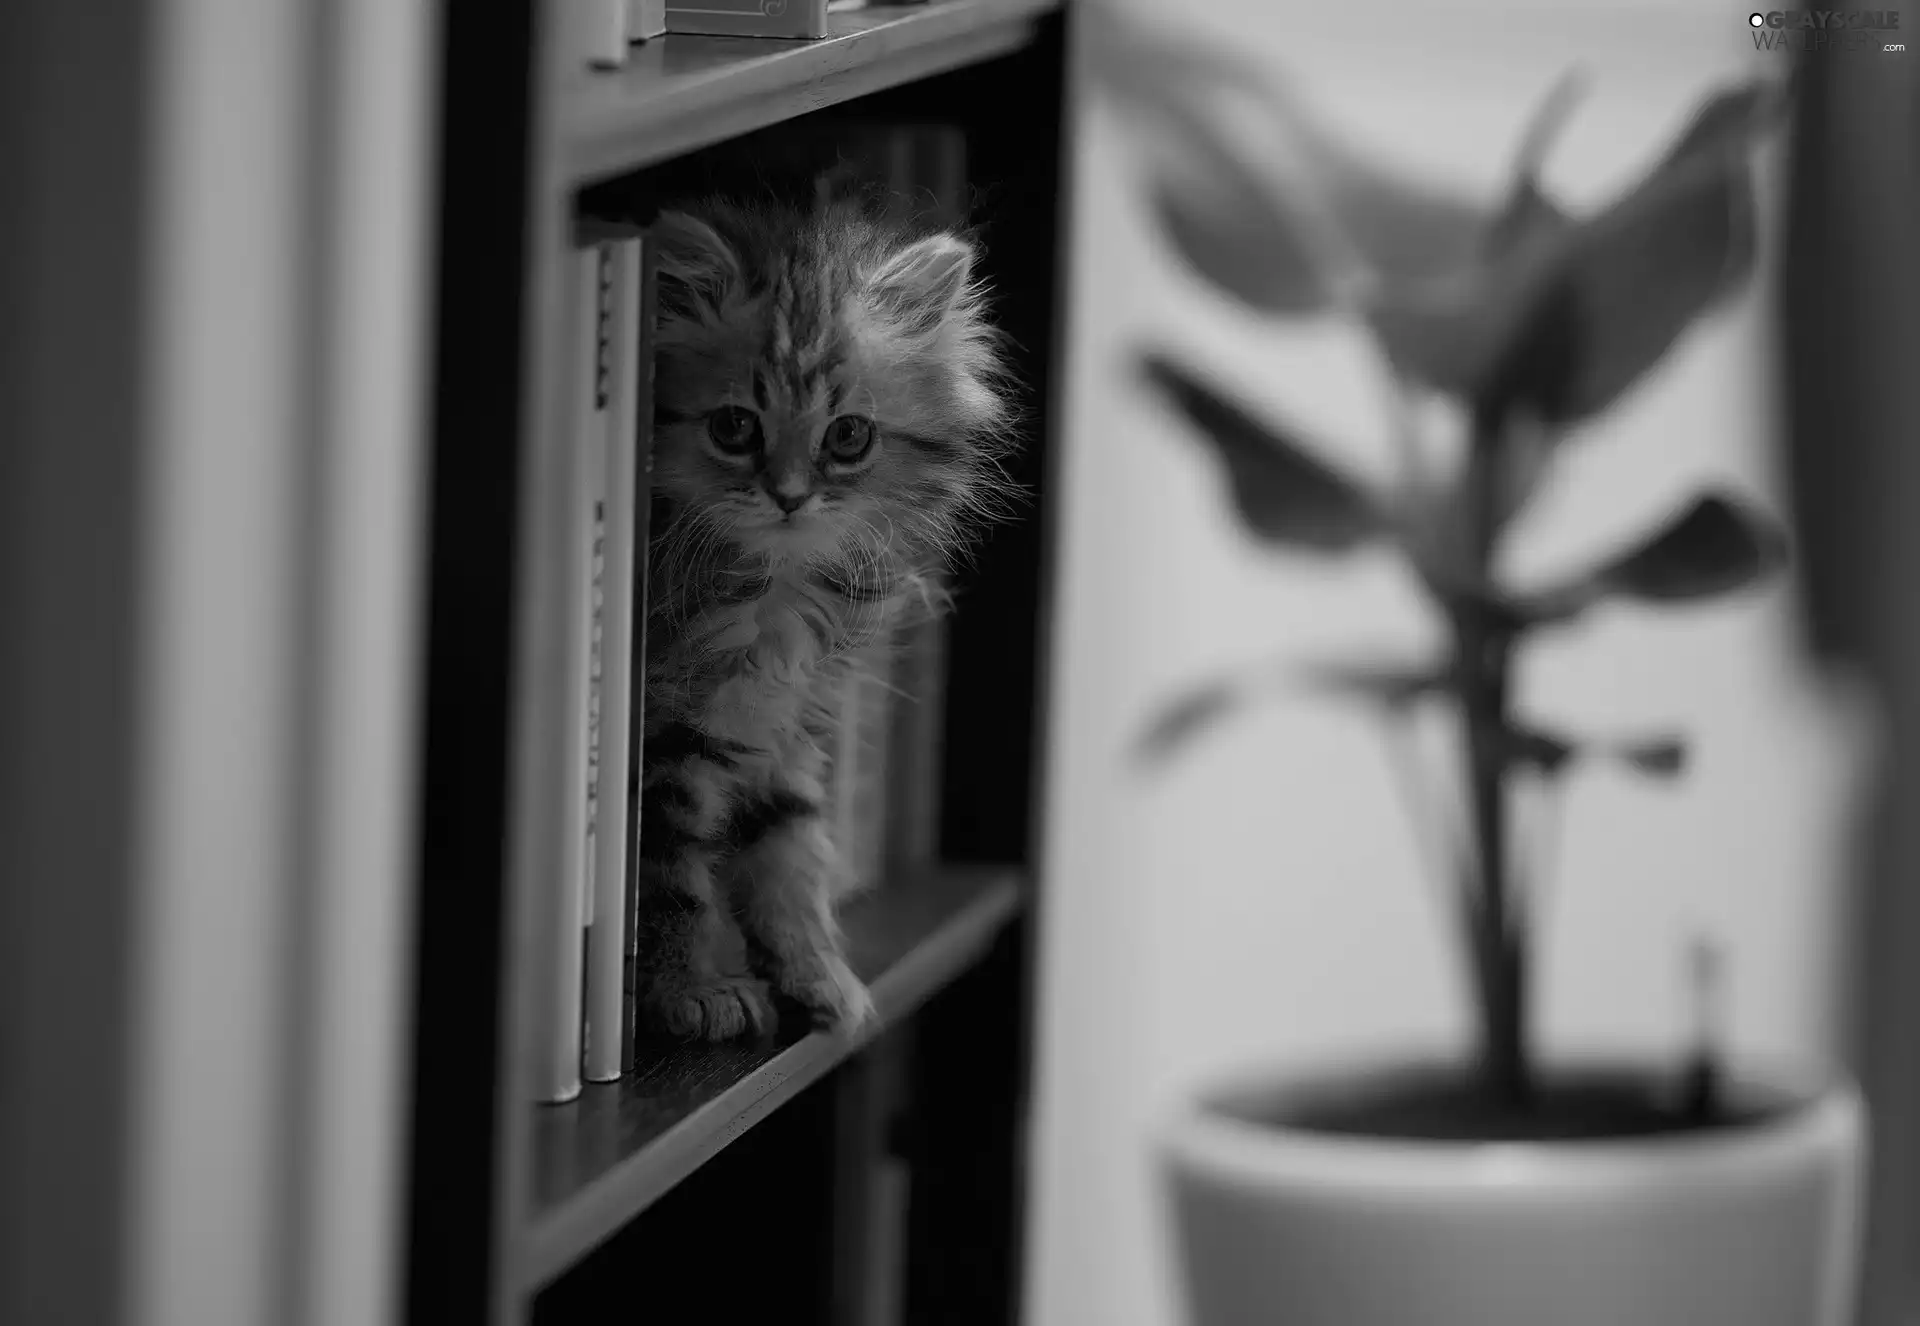 small, bookstand, Books, kitten